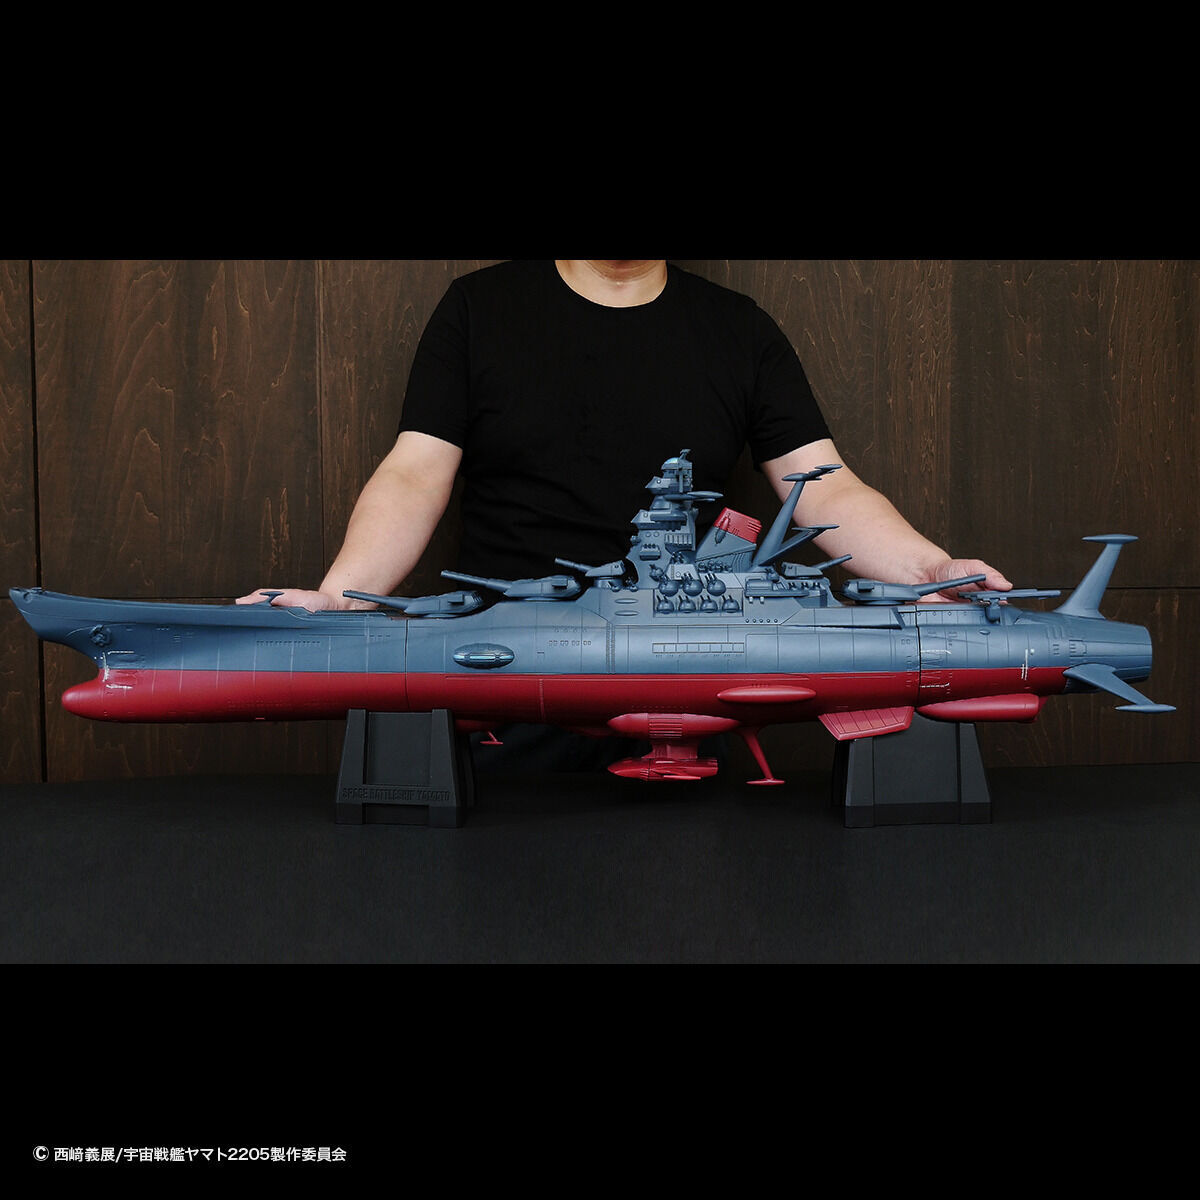 1mを超える超大スケール ジャンボソフビフィギュア Mechanics 宇宙戦艦ヤマト 25 12月に発売 Hobby Watch